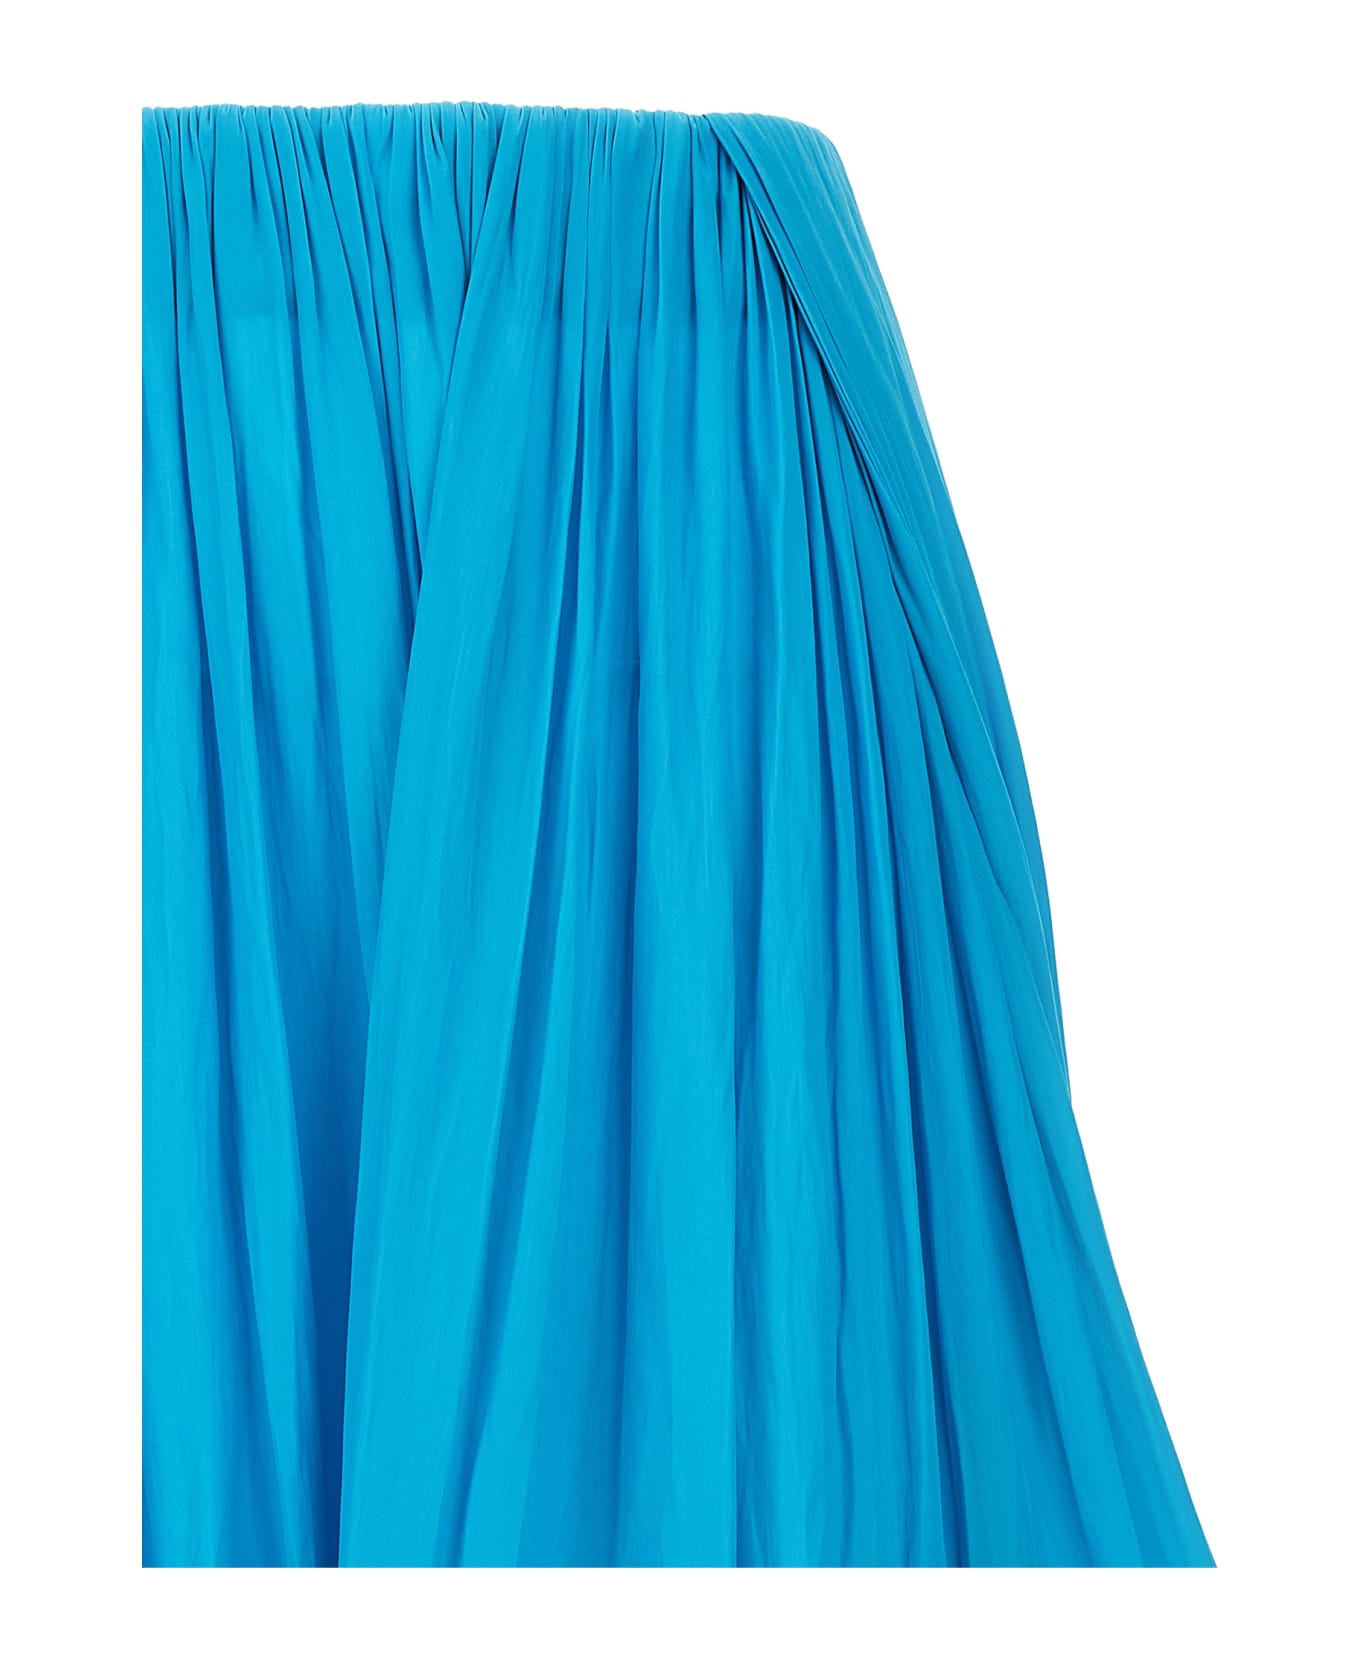 Lanvin Asymmetrical Midi Skirt - Light Blue スカート